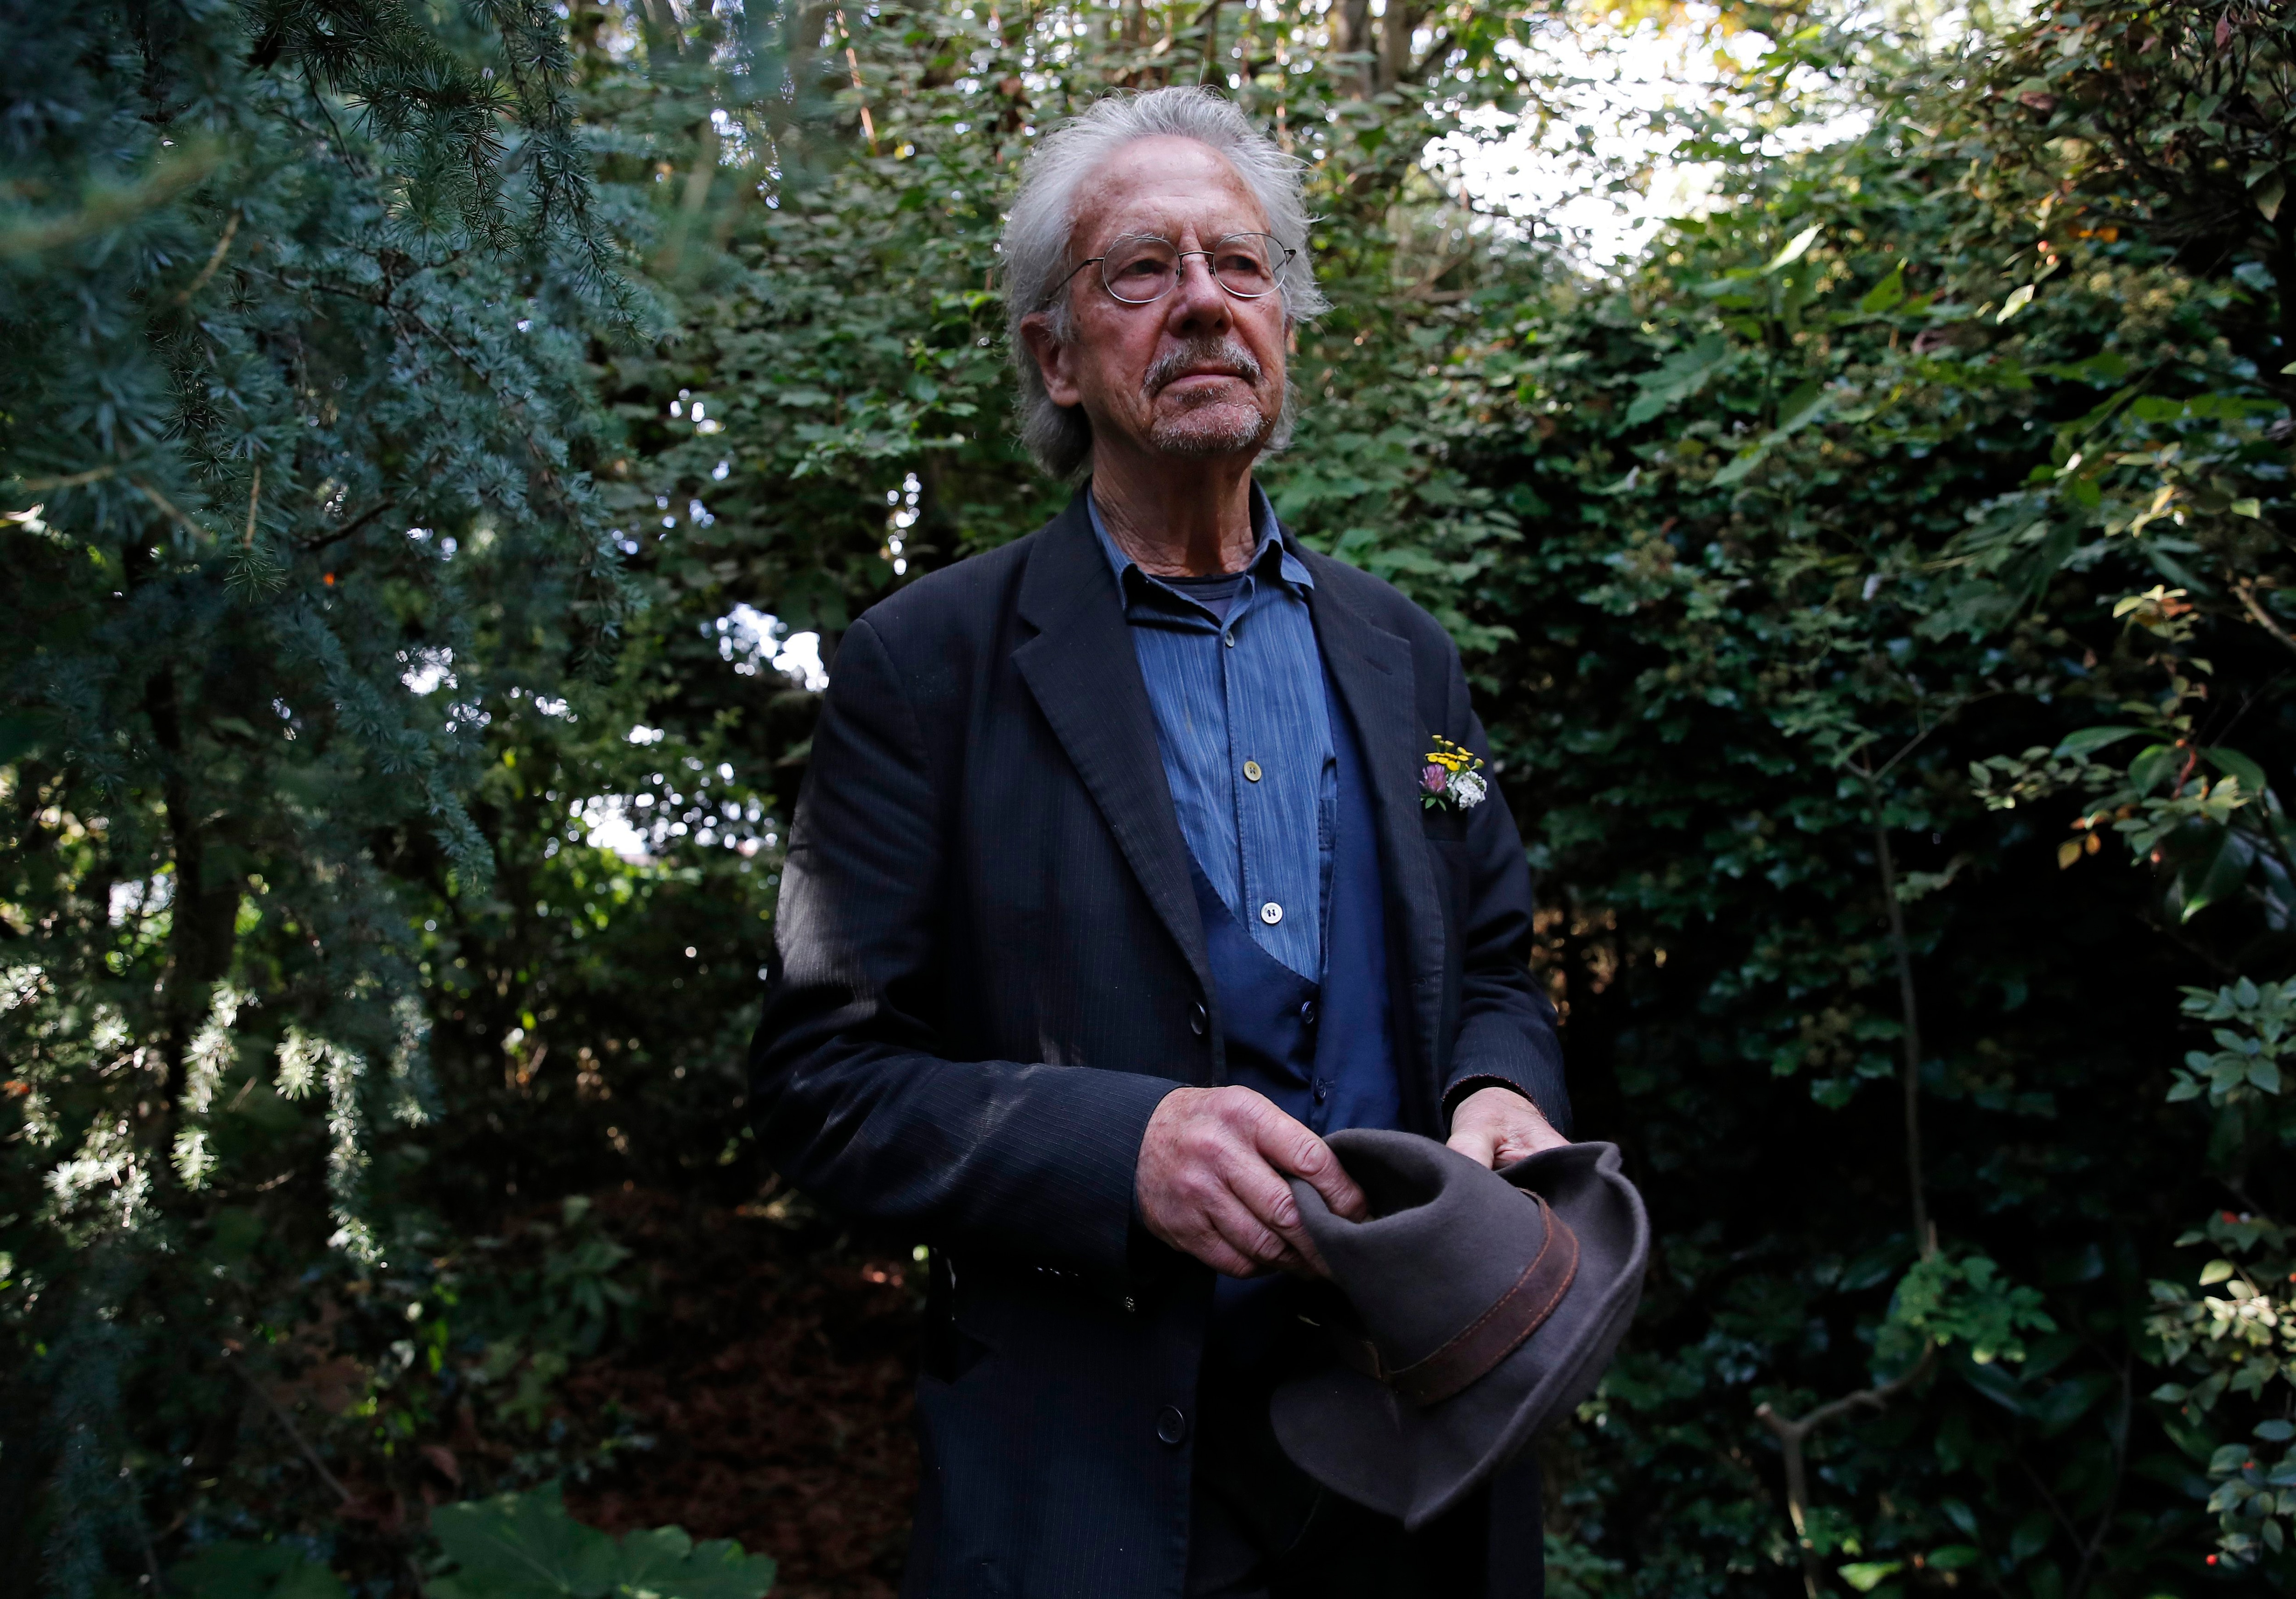 El autor austríaco Peter Handke posa en el jardín de su casa en Chaville, cerca de París, el jueves 10 de octubre de 2019. Handke fue galardonado horas antes con el premio Nobel de Literatura 2019. (AP Foto/Francois Mori)